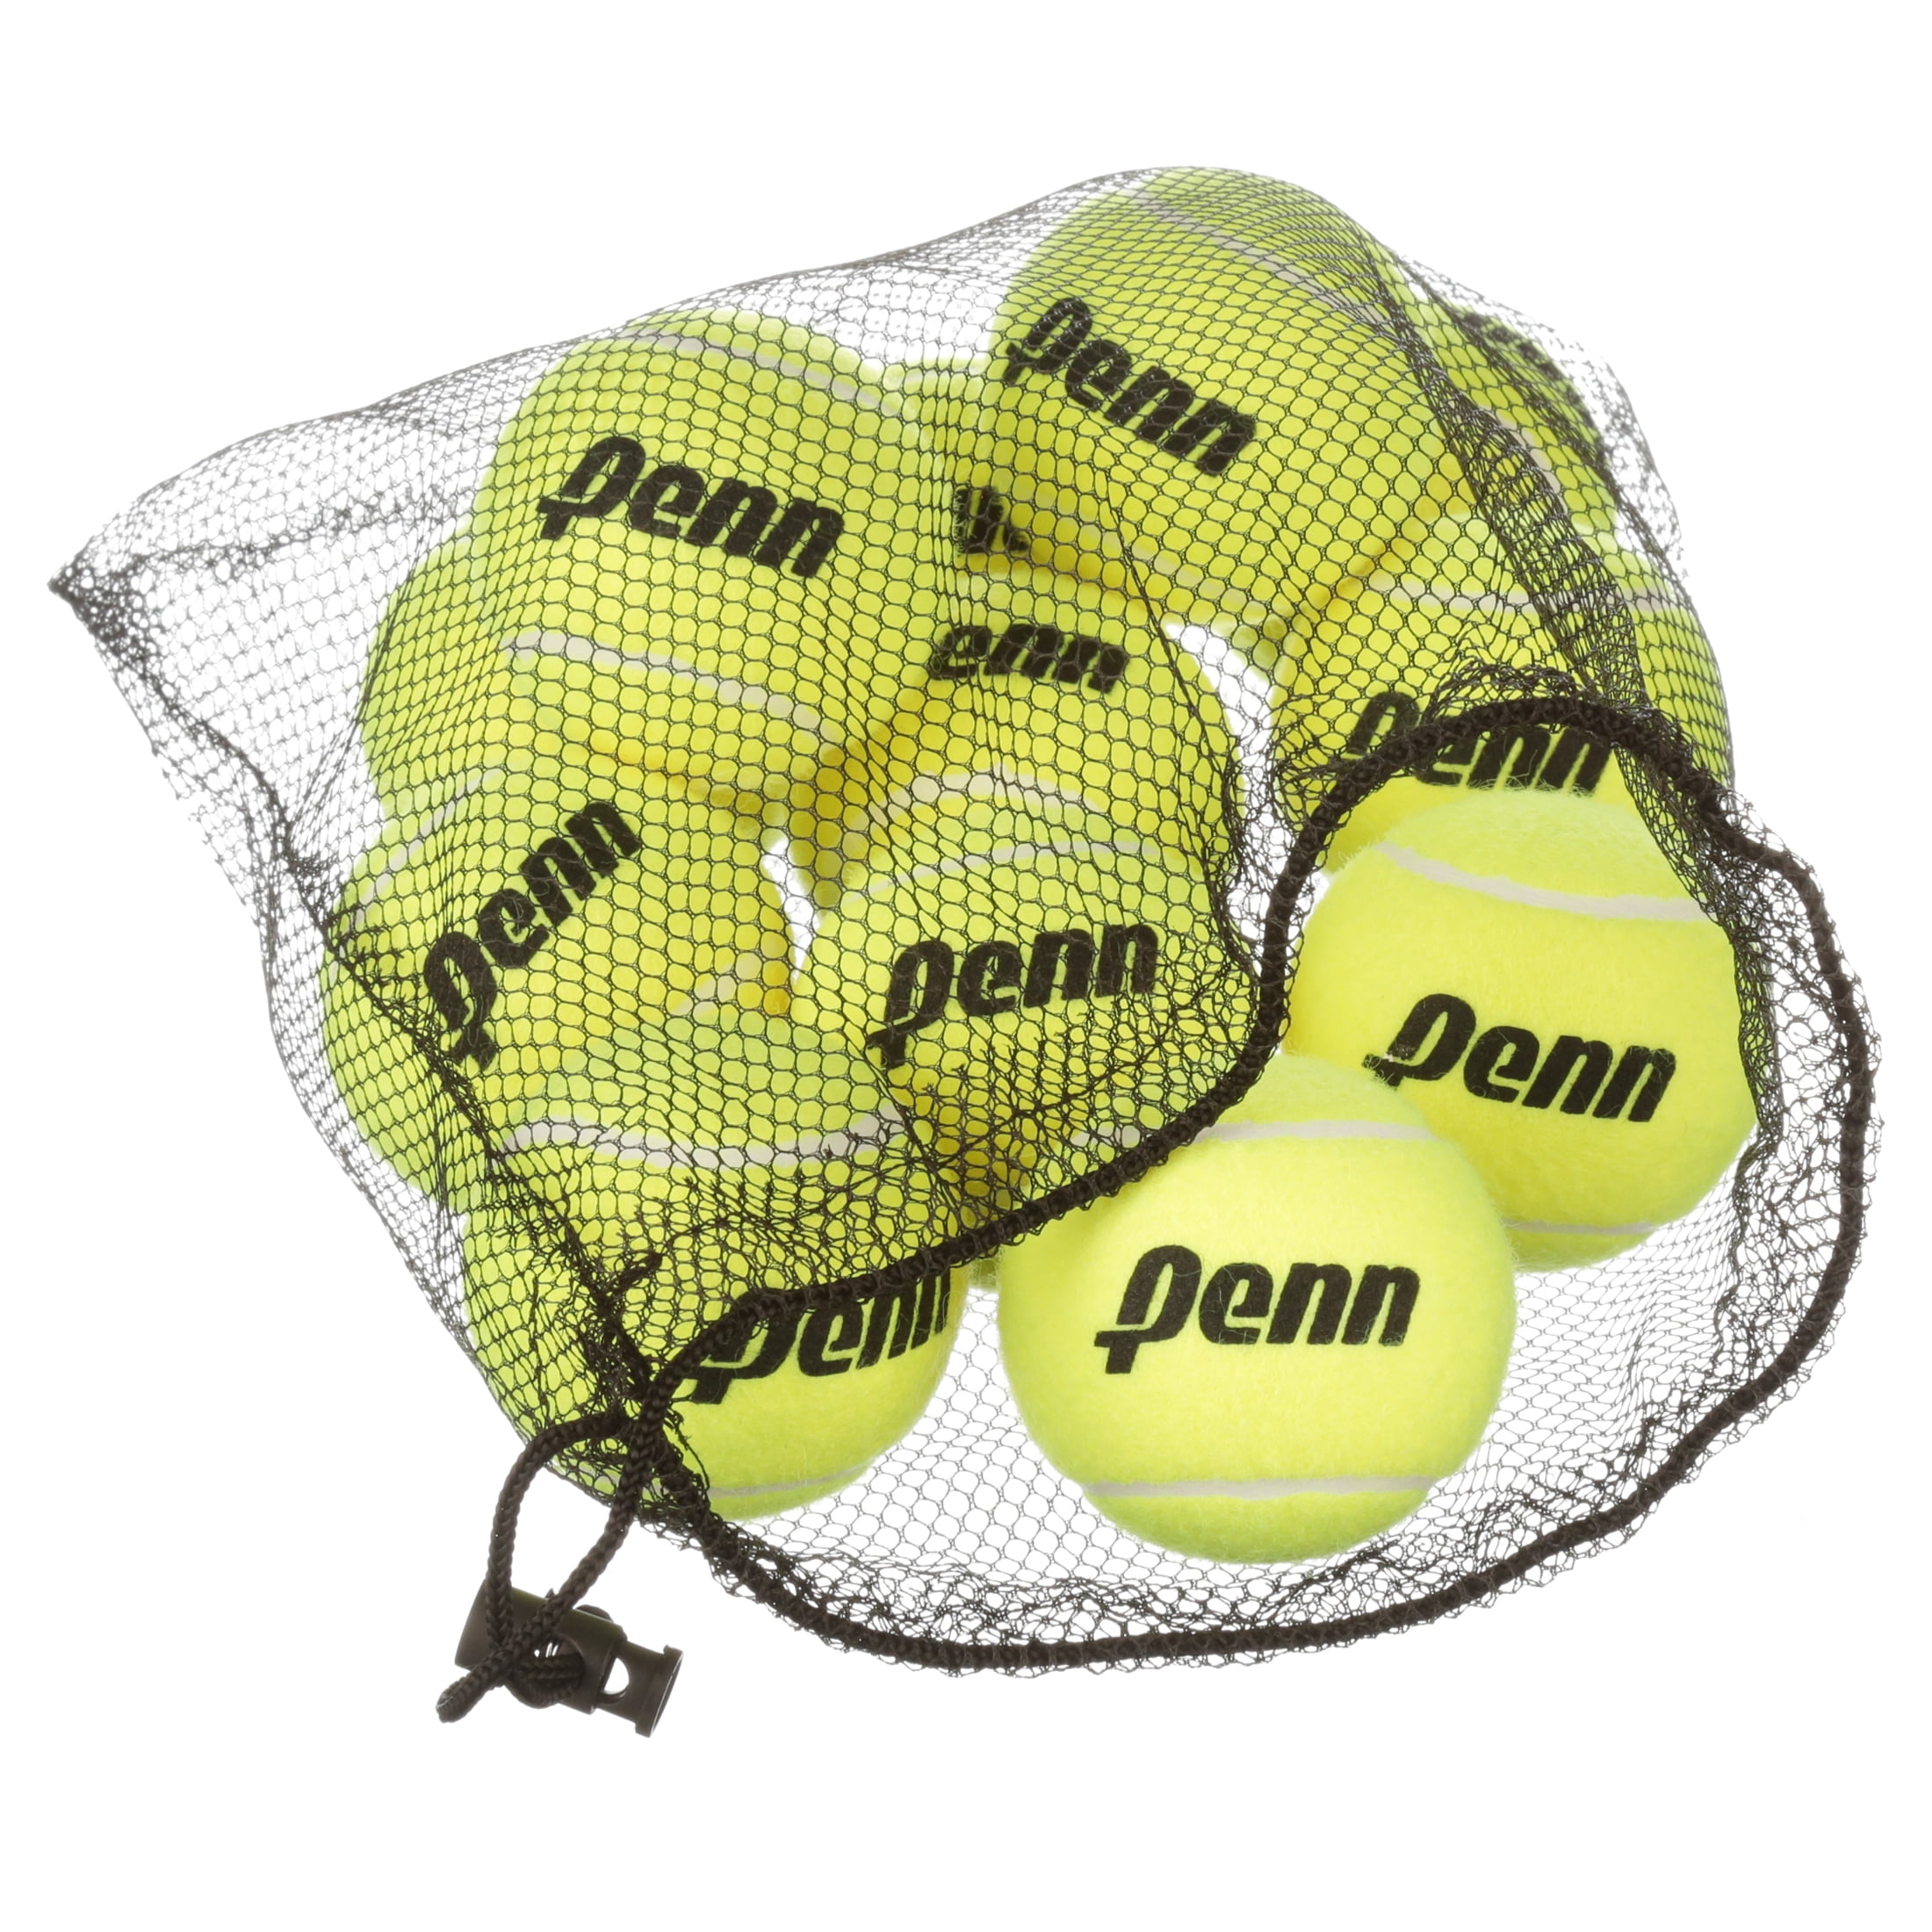 12 Balls Included Penn Pressureless Mesh Carrying Bag of Training Tennis Balls 